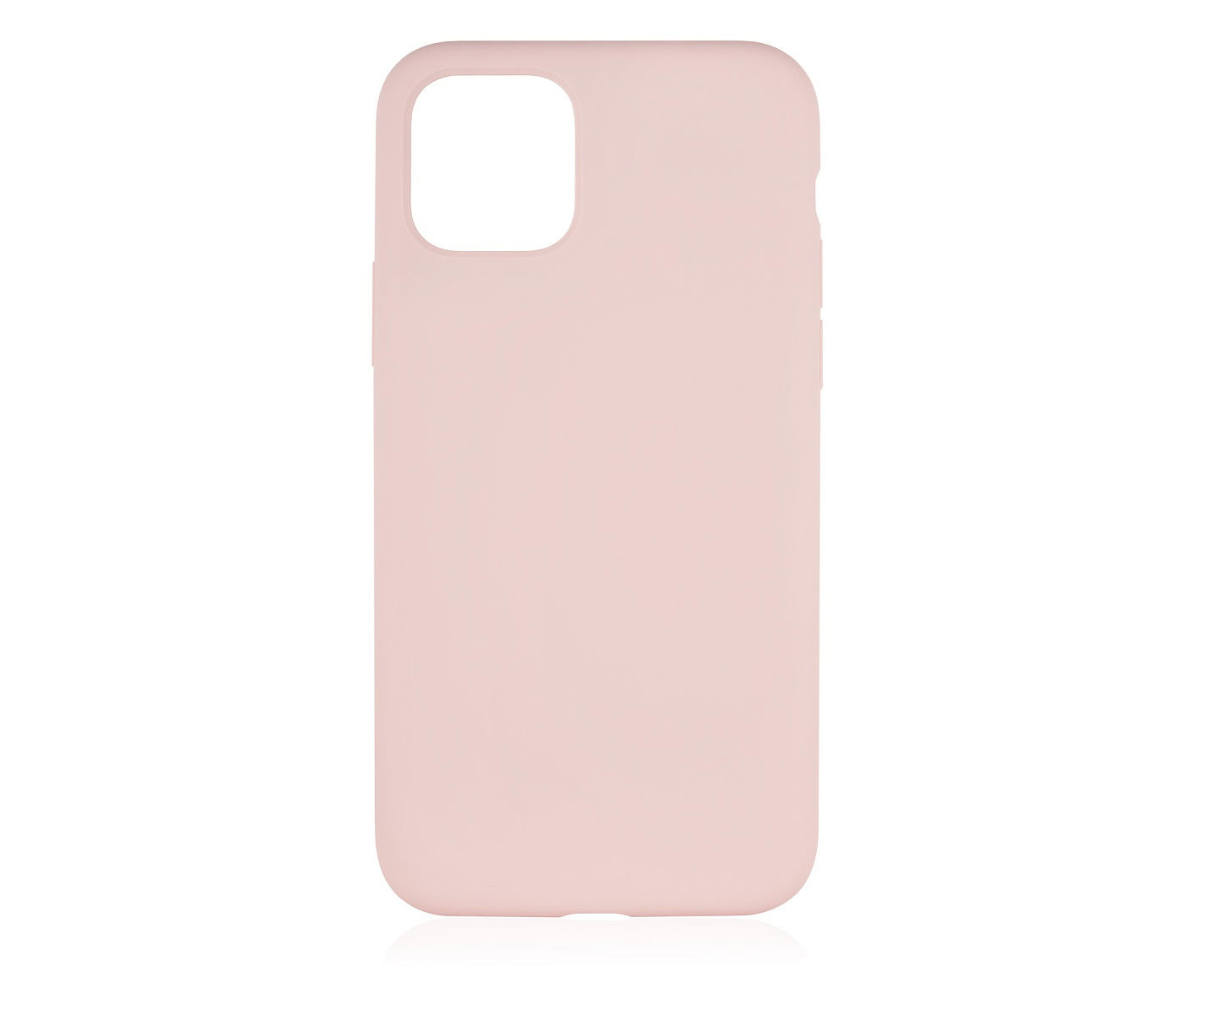 Фото — Чехол защитный vlp Silicone Сase для iPhone 11 Pro Max, светло-розовый